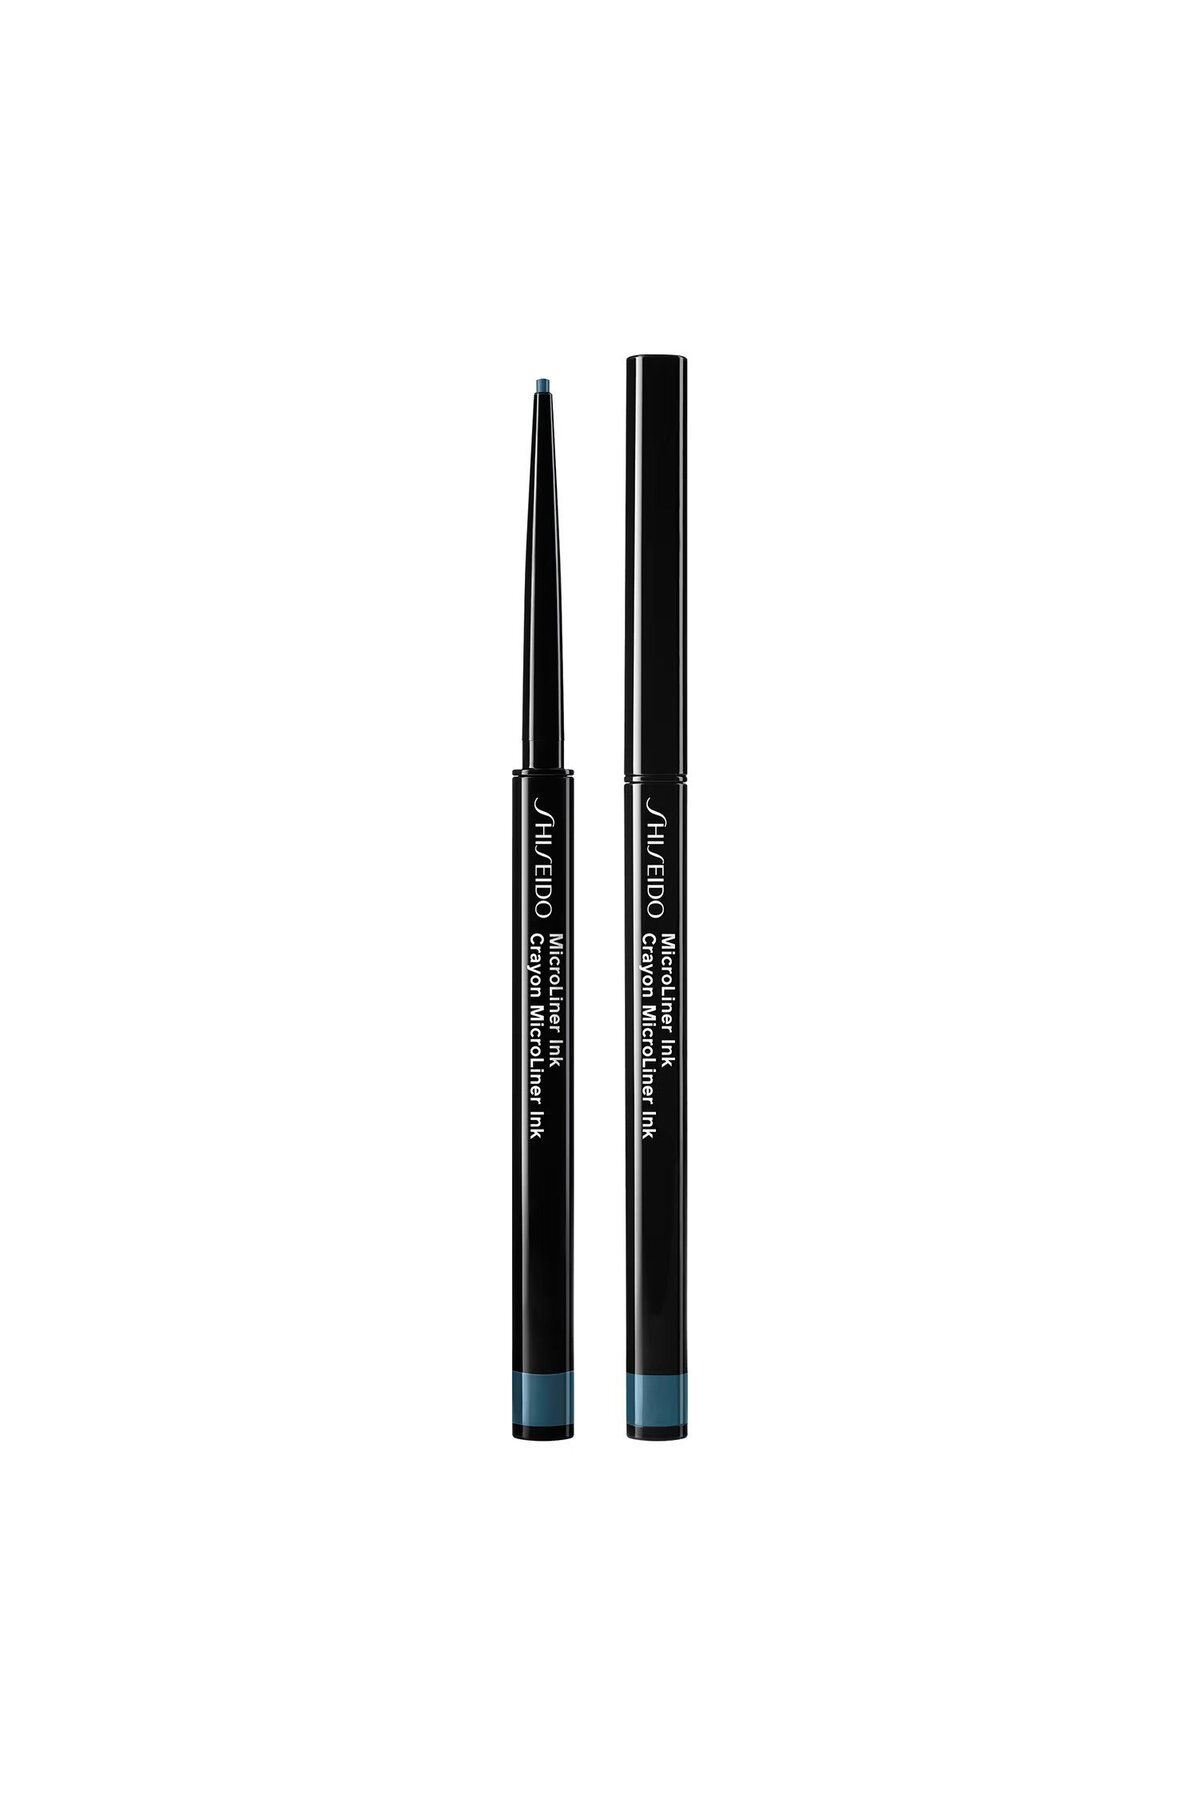 Shiseido MICROLINER INK - Mikro İnce Uçlu 24 Saate Kadar Dayanan Zengin Doygun Ve Mat Göz Kalemi 0,08 gr